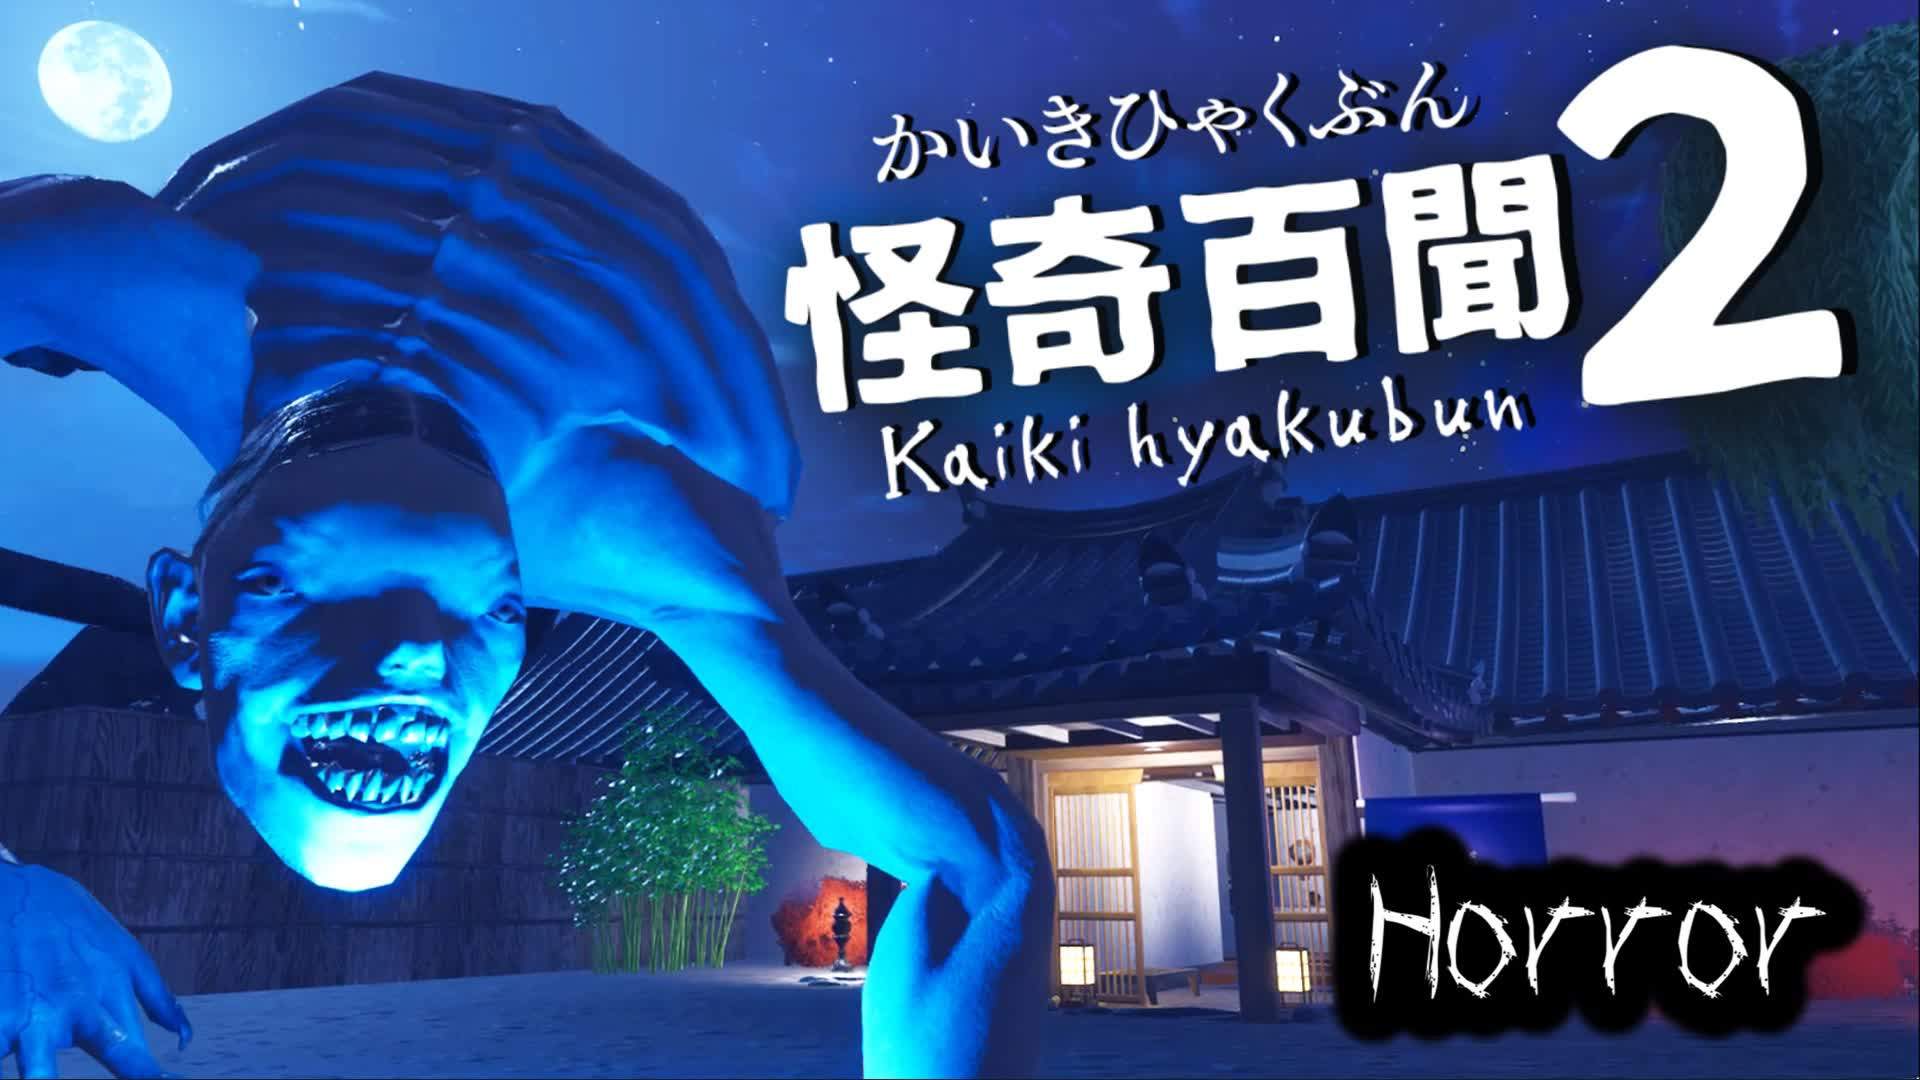 【HORROR】怪奇百聞2 Kaiki Hyakubun2